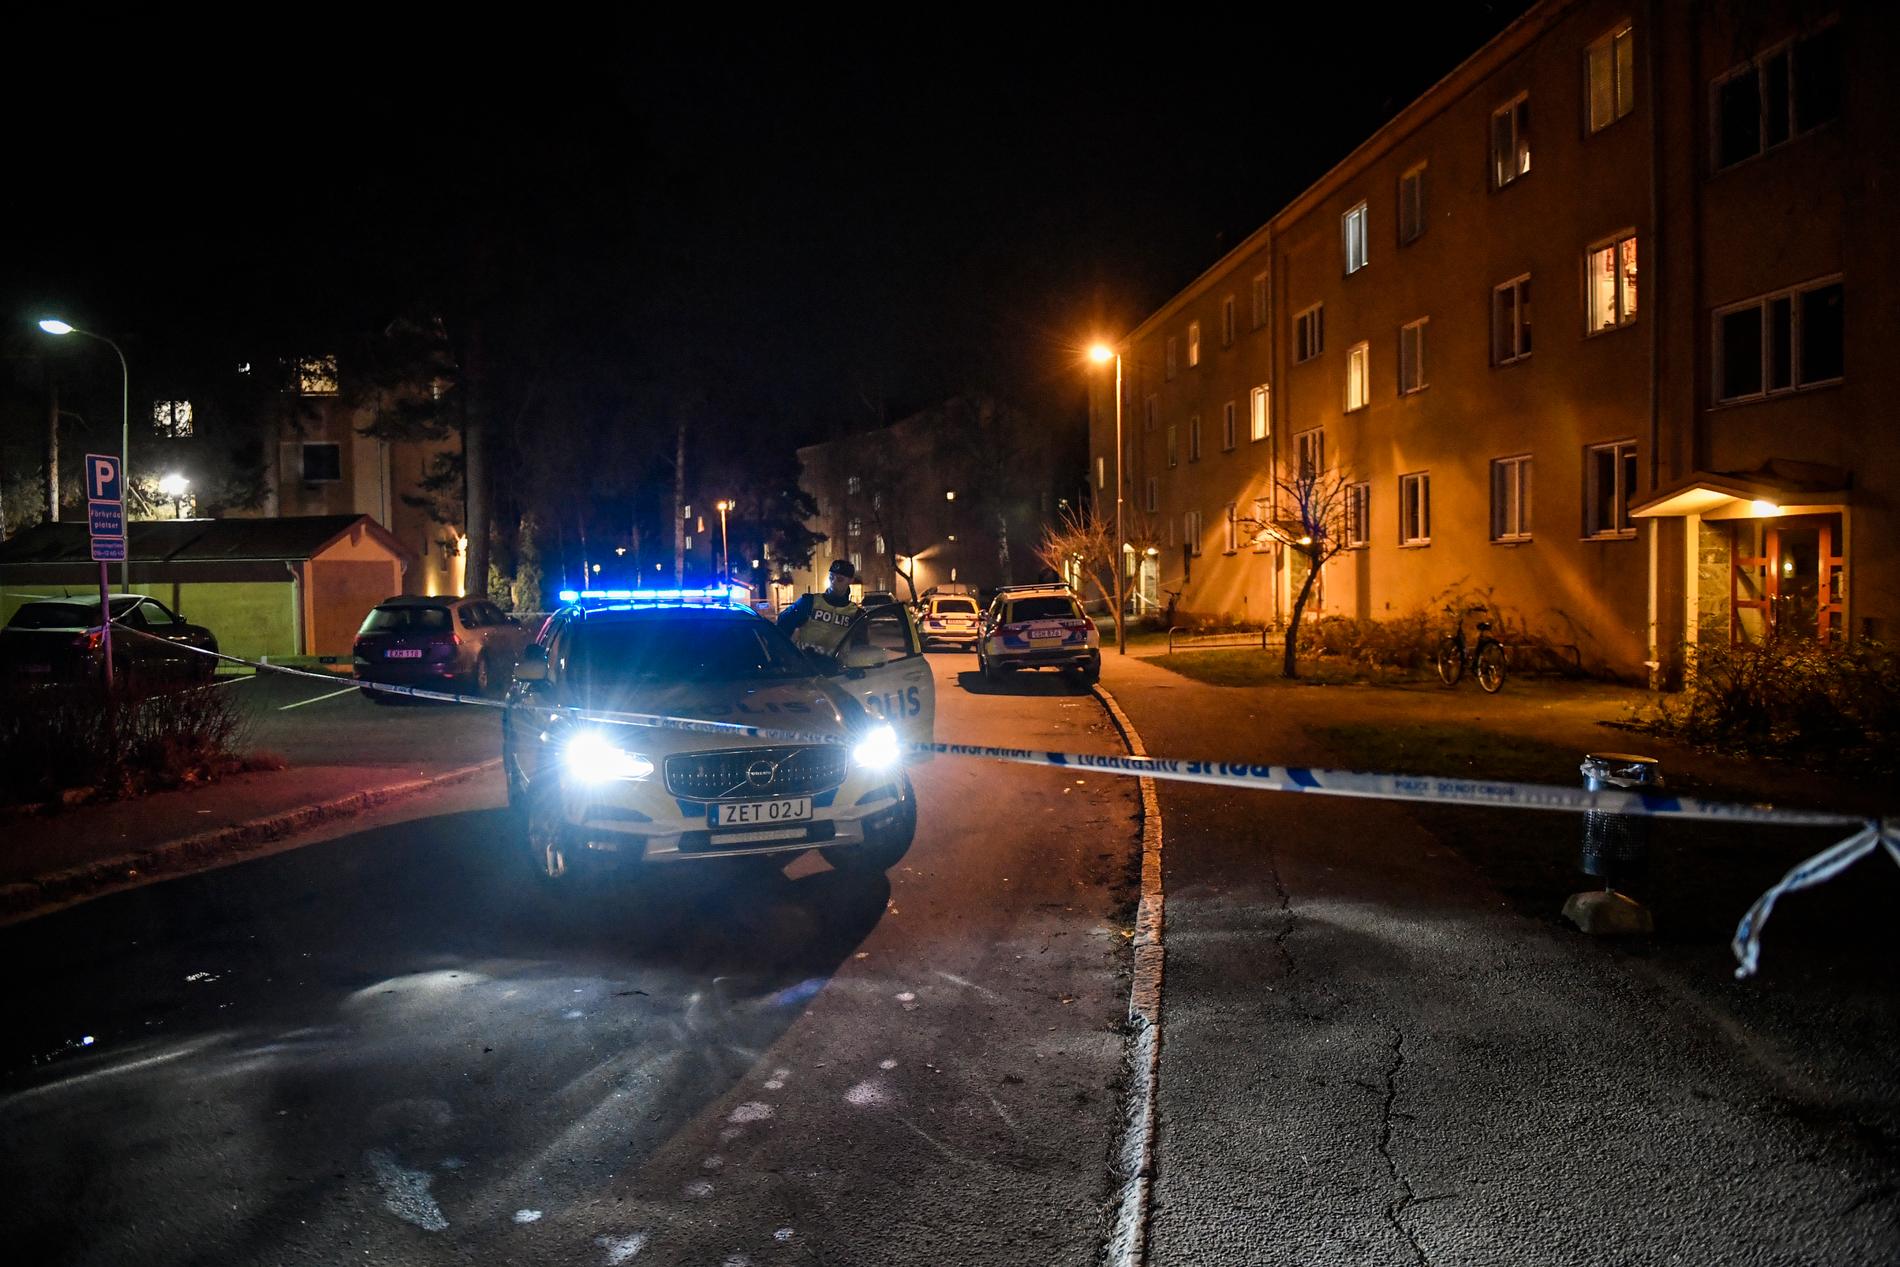 Området i stadsdelen Fröslunda i Eskilstuna var avspärrat under lördagskvällen efter larmet om skottlossning som kom in vid 17-tiden.